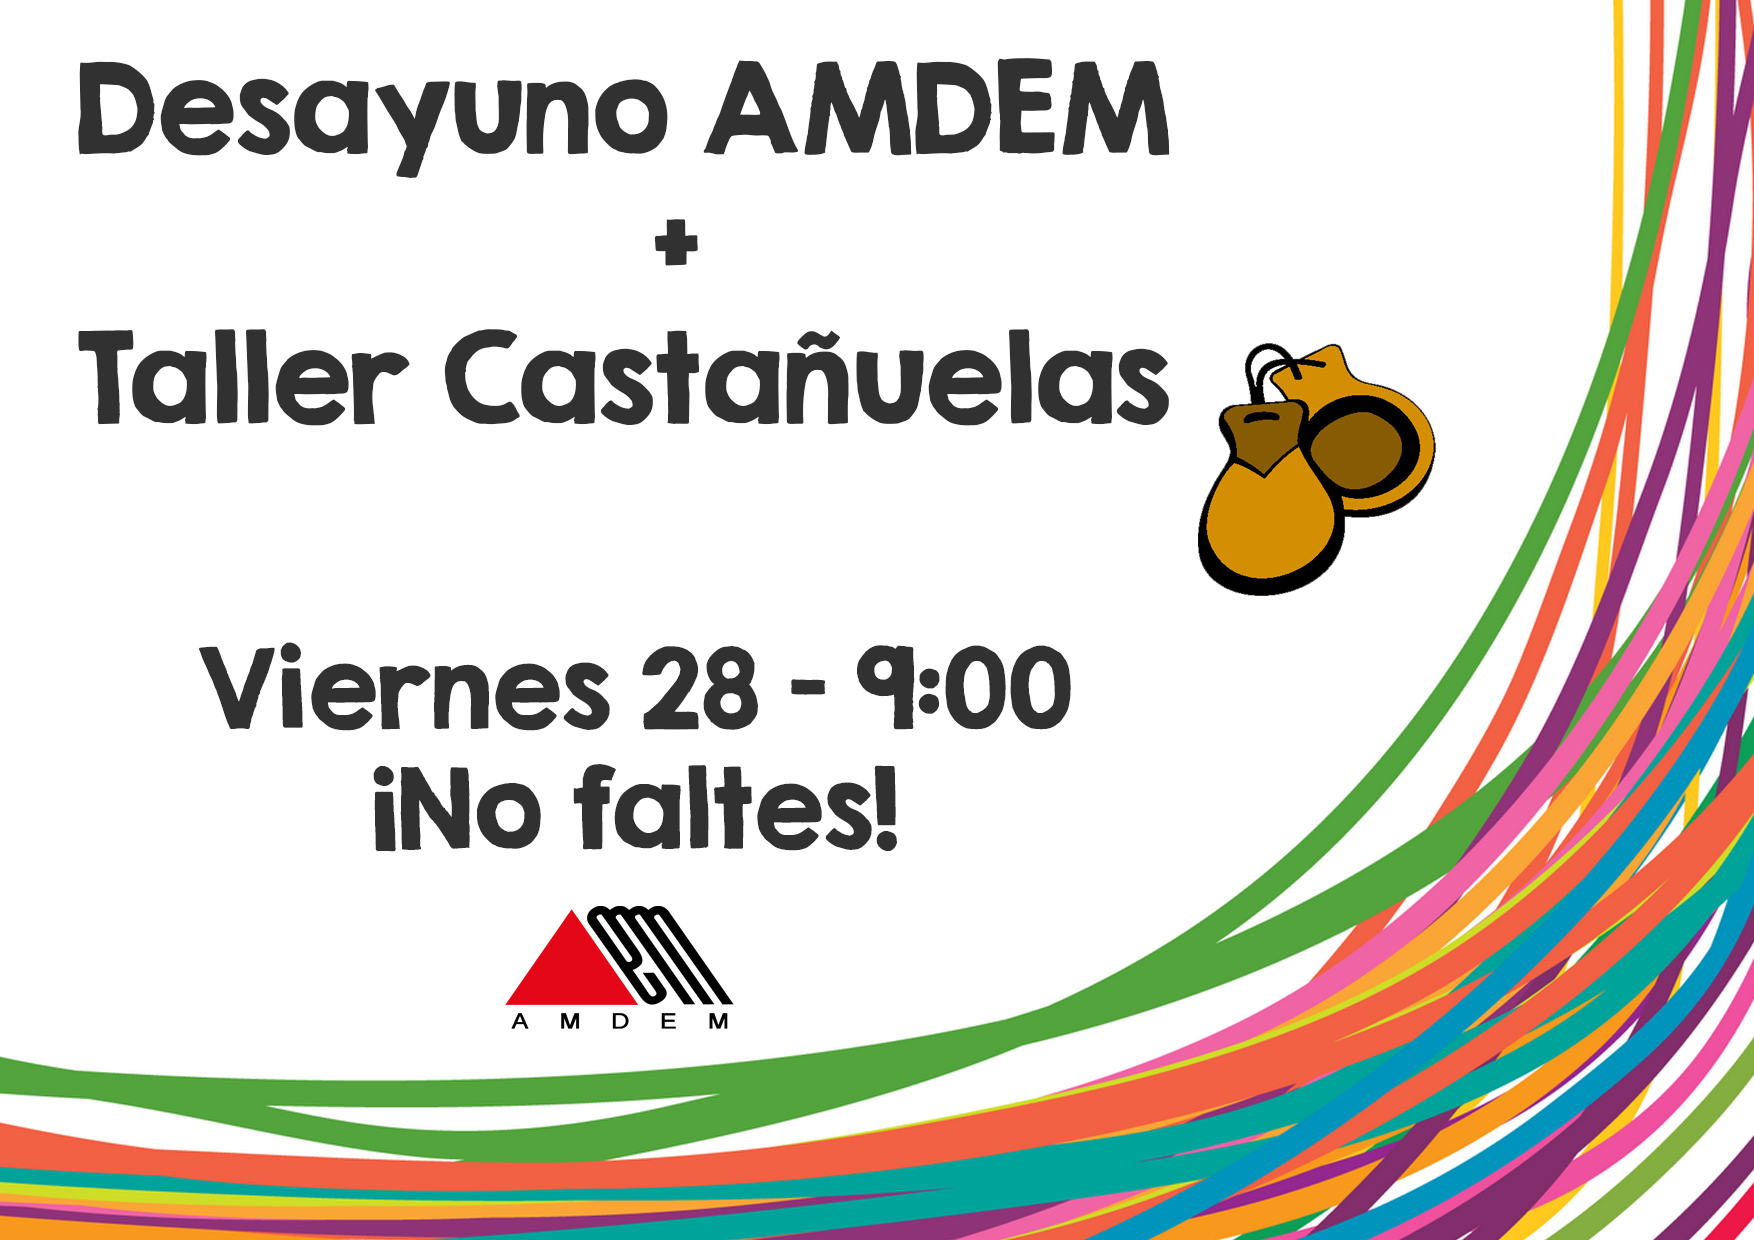 Viernes 28 de febrero Desayuno AMDEM y Taller de Castañuelas